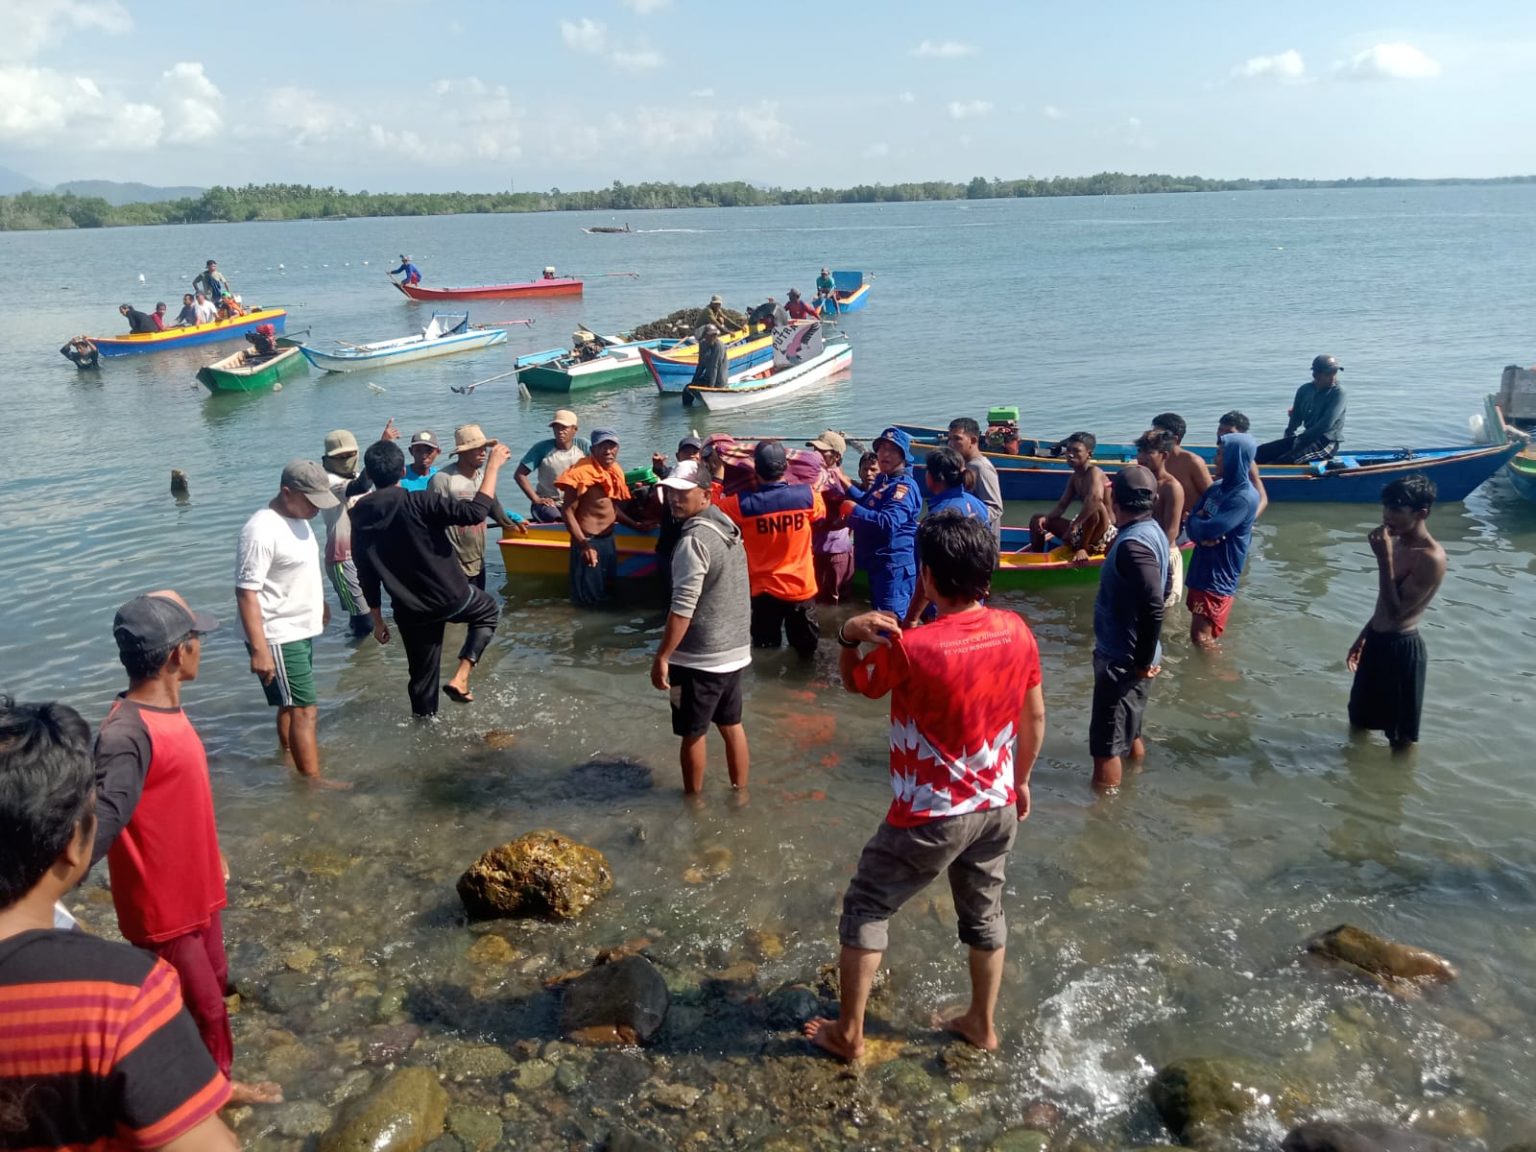 Warga Desa Belopa, Kecamatan Belopa, Kabupaten Luwu Nasaruddin (67) akhirnya ditemukan di laut dalam keadaan tidak bernyawa lagi, Kamis 27 Juli 2023.